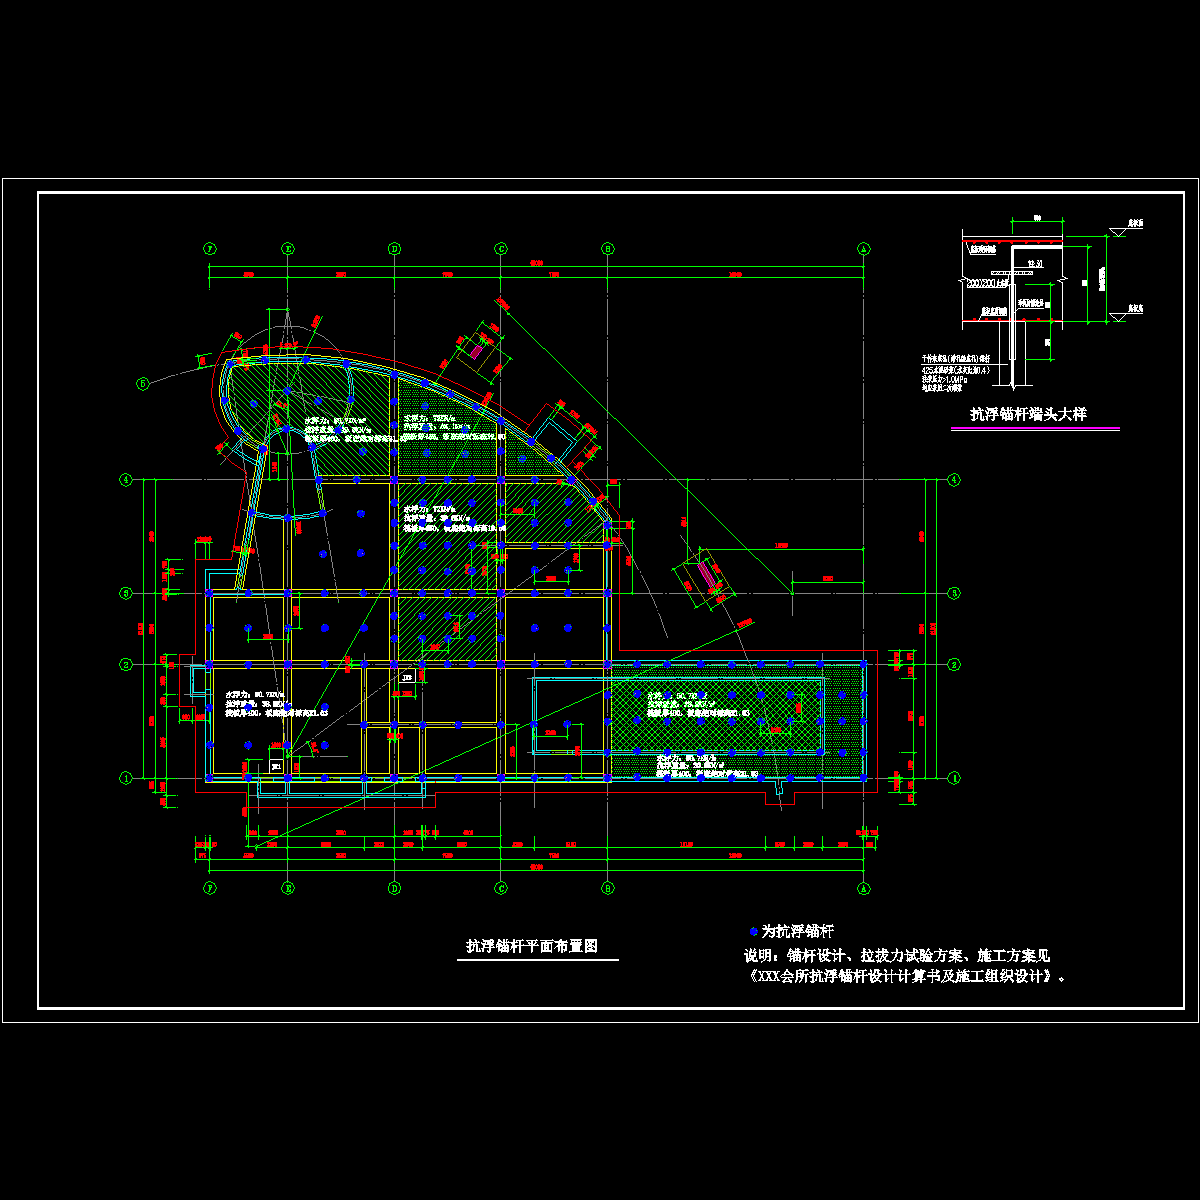 建筑物筏板基础抗浮锚杆设计图纸.dwg - 1